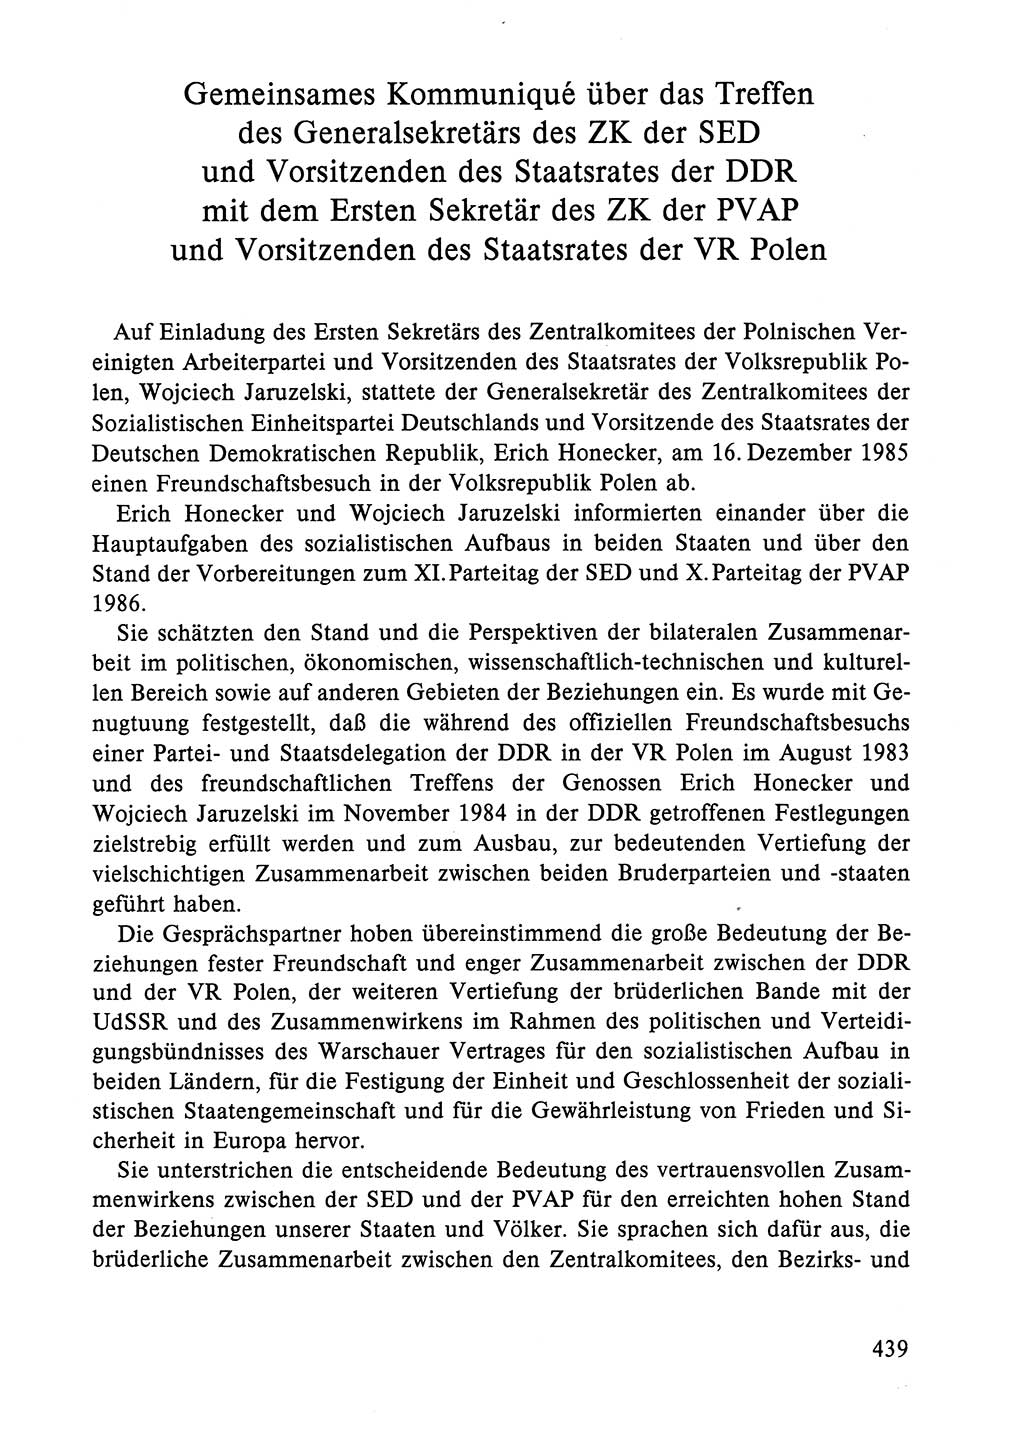 Dokumente der Sozialistischen Einheitspartei Deutschlands (SED) [Deutsche Demokratische Republik (DDR)] 1984-1985, Seite 439 (Dok. SED DDR 1984-1985, S. 439)